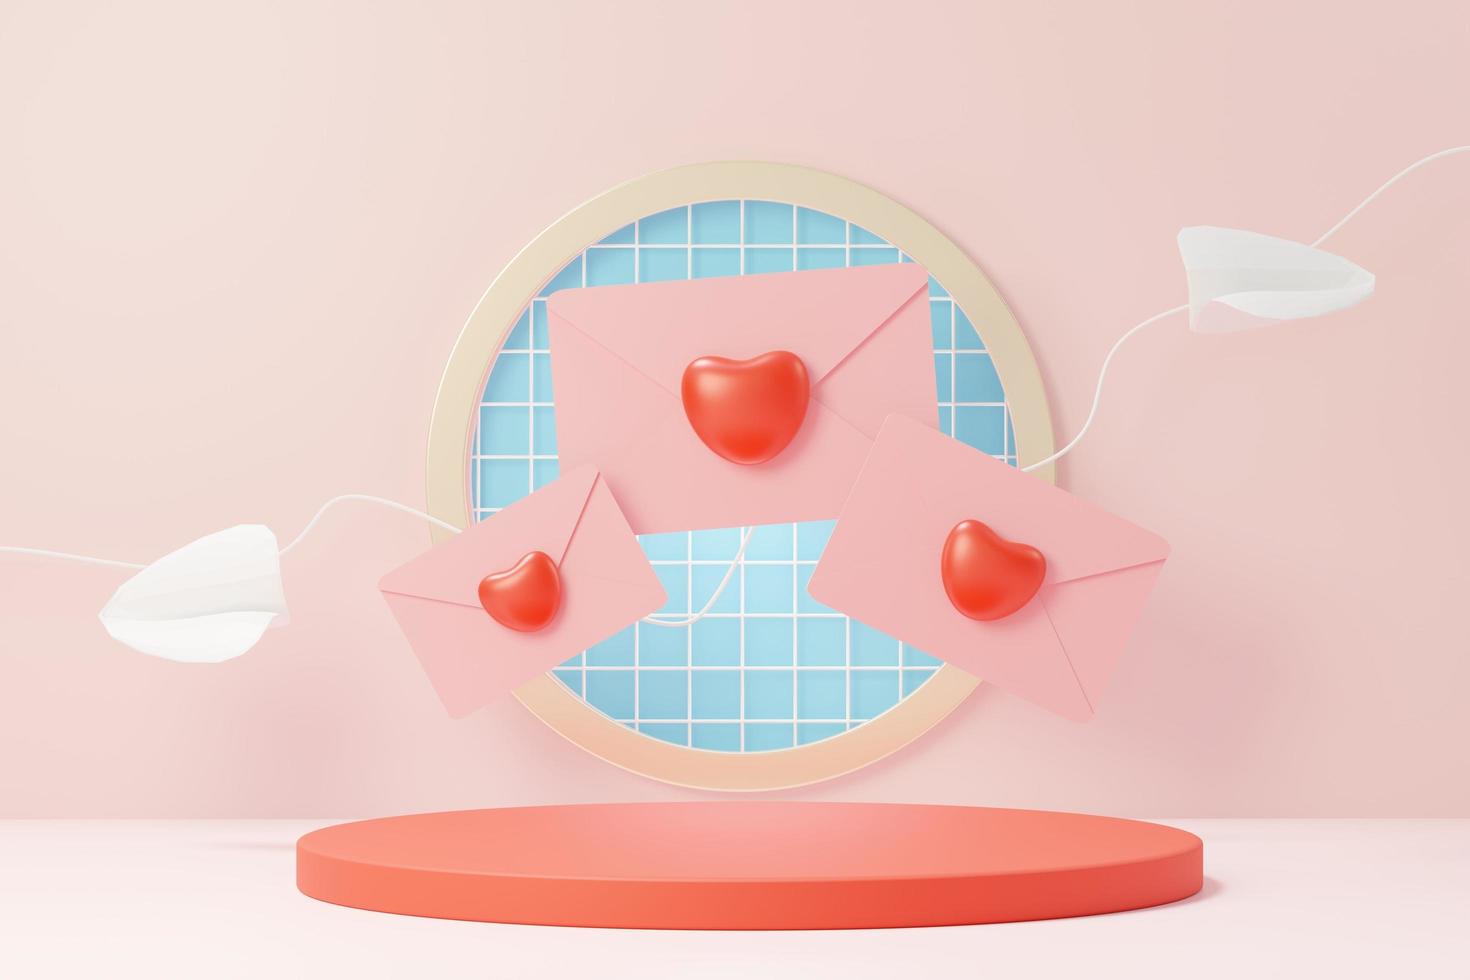 3D render minimale zoete scène met display-podium voor mock-up en productmerkpresentatie. roze voetstuk staat voor Valentijnsdag thema. schattige mooie hart achtergrond. de ontwerpstijl van de liefdesdag. foto